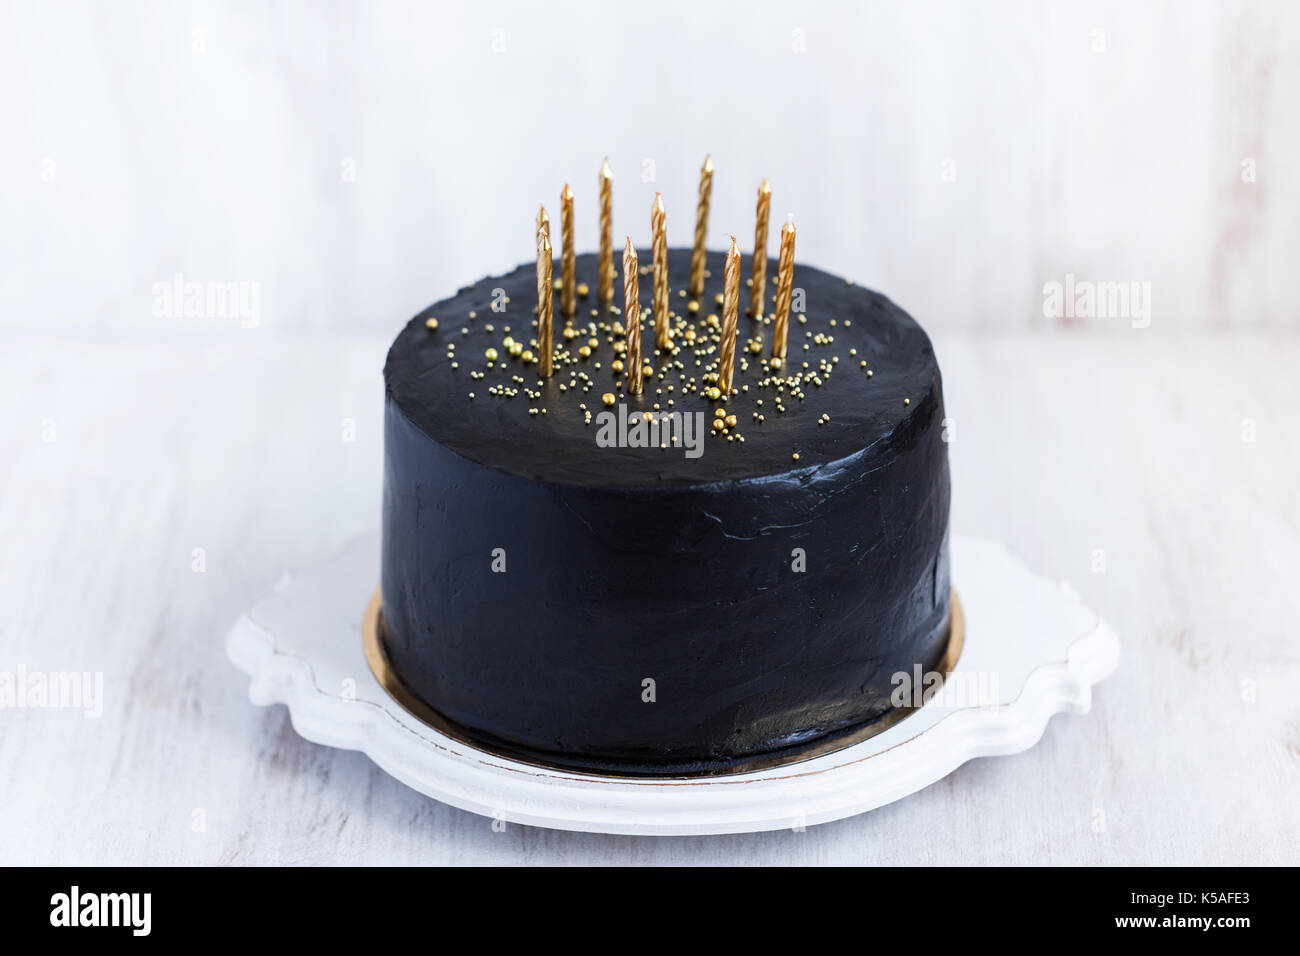 Negro tarta de cumpleaños con velas de oro sobre fondo blanco. Foto de stock